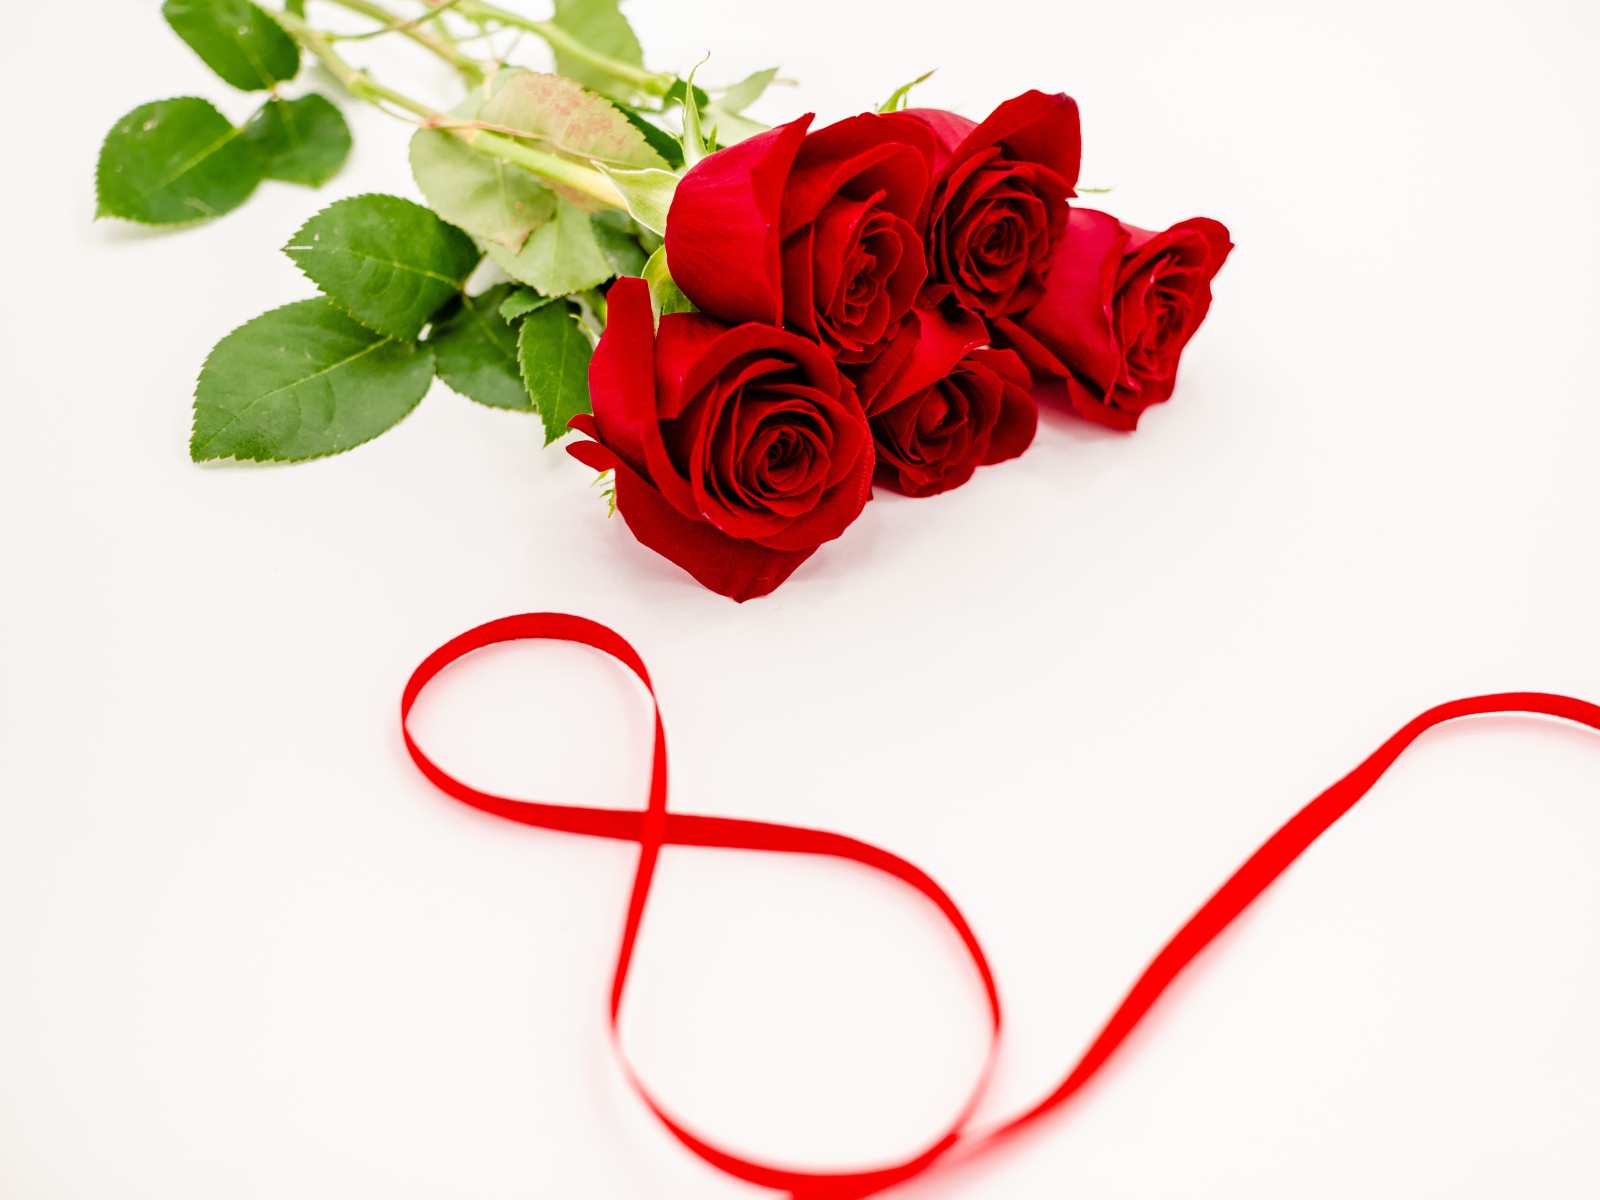 Букет красных роз и цифра 8 из атласной ленты на белом фоне